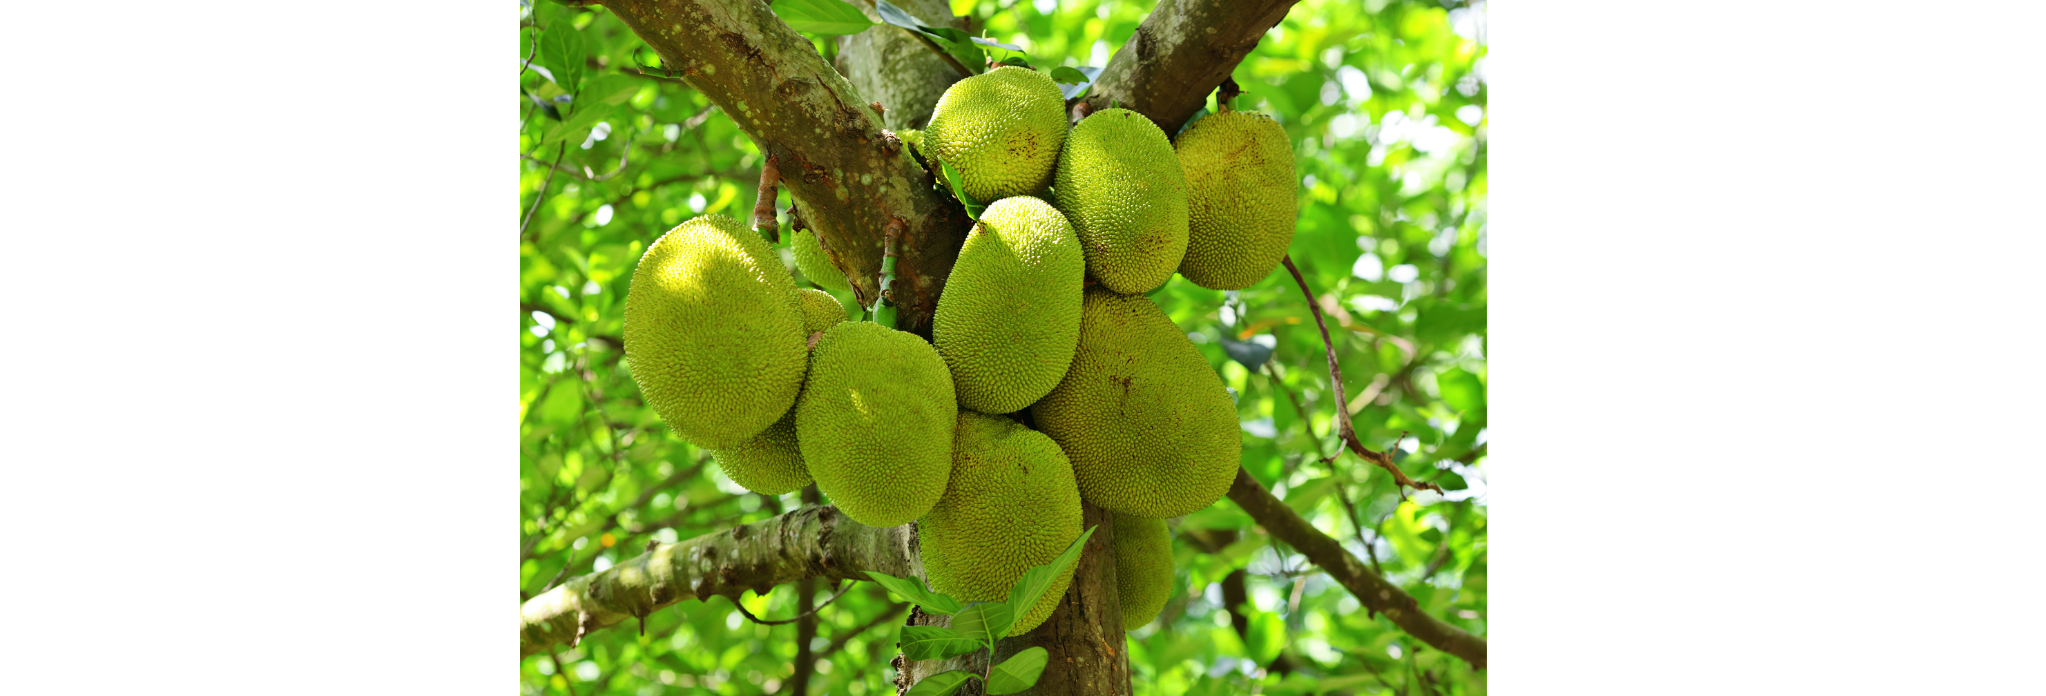 Jackfruit on Tree